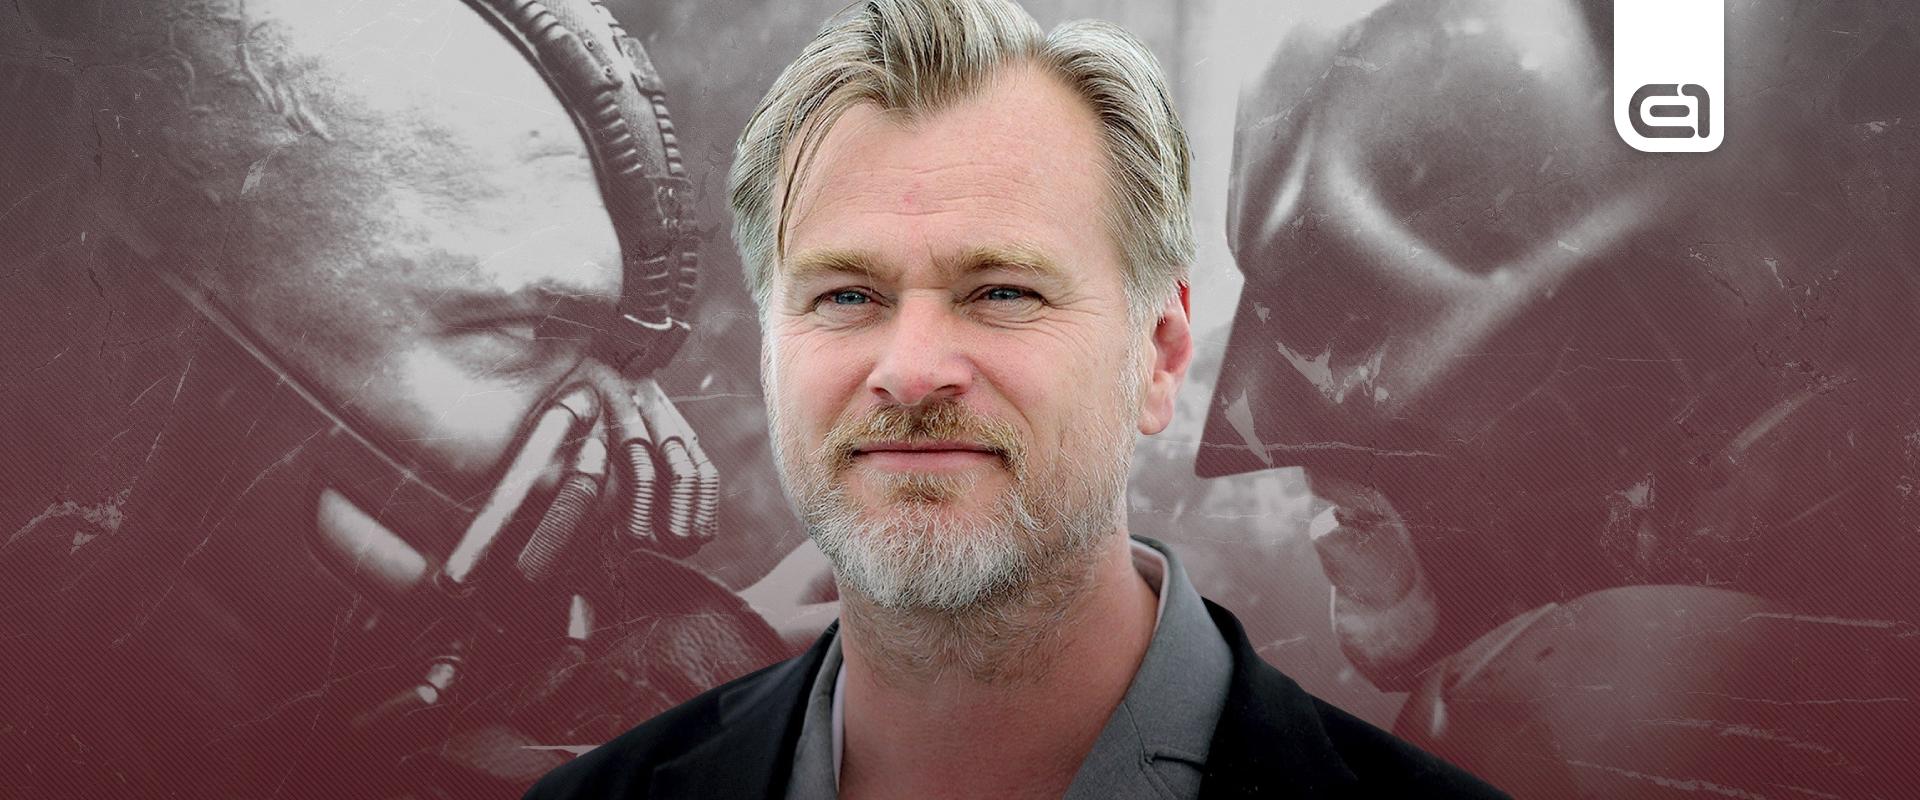 Nolan egyetlen filmje sem rohadt meg a Rotten Tomatoes oldalán, elképesztő a filmográfiája